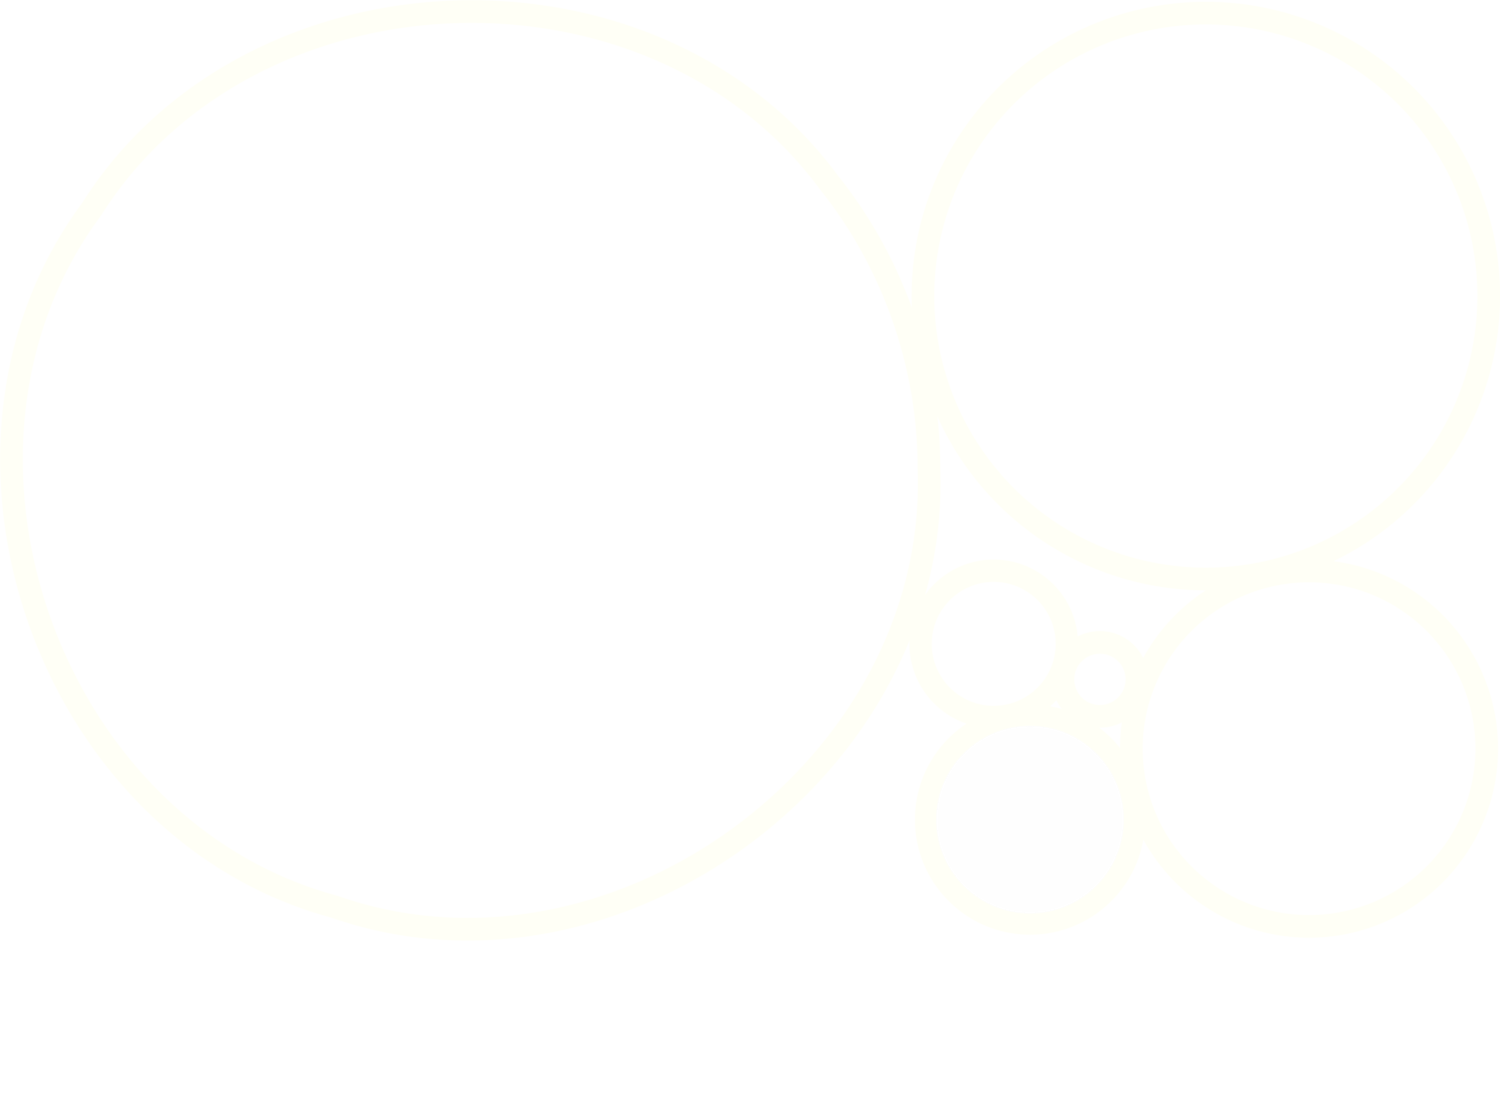 Bespoke Industries